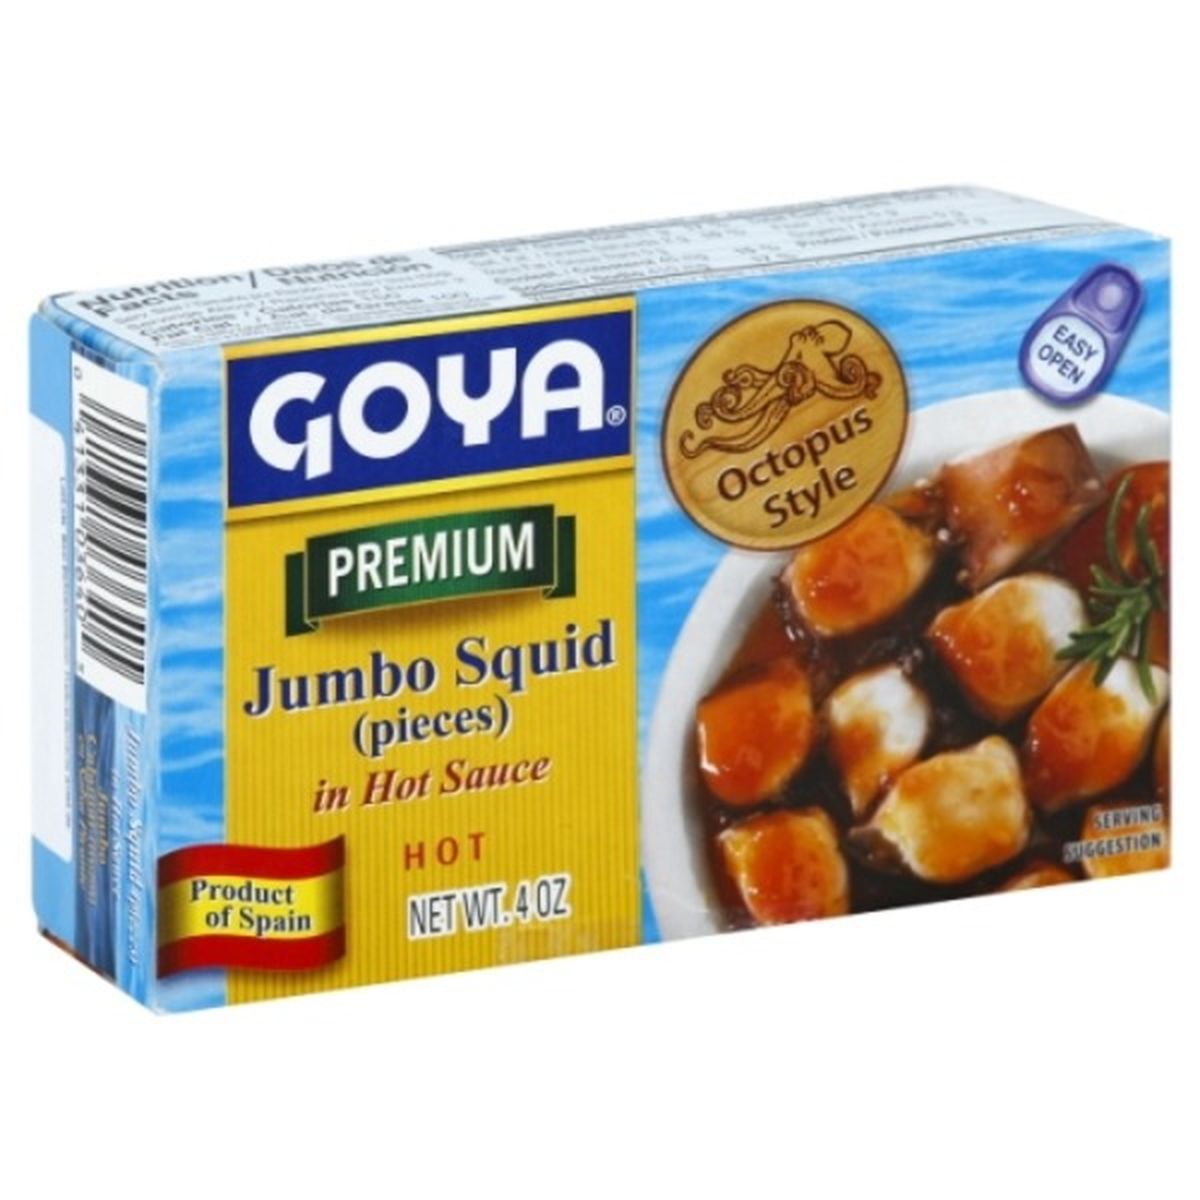 Calories in Goya Squid, Premium, Jumbo, Pieces, in Hot Sauce, Hot